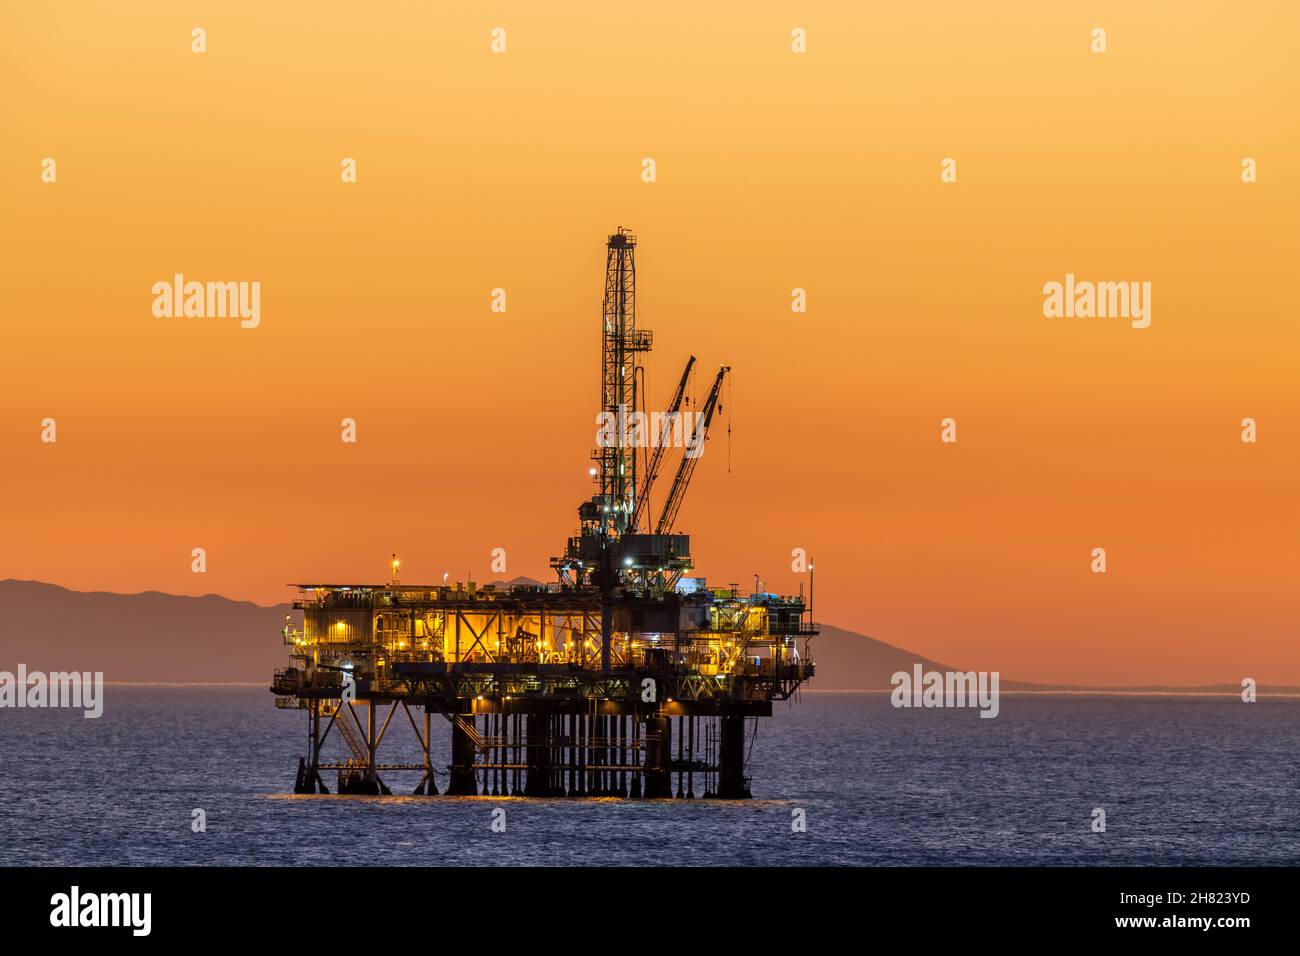 La plate-forme pétrolière offshore au large de la côte californienne se fixe contre un ciel orange rempli de fumée d'un feu à proximité tandis que le soleil se couche derrière la plate-forme. Banque D'Images